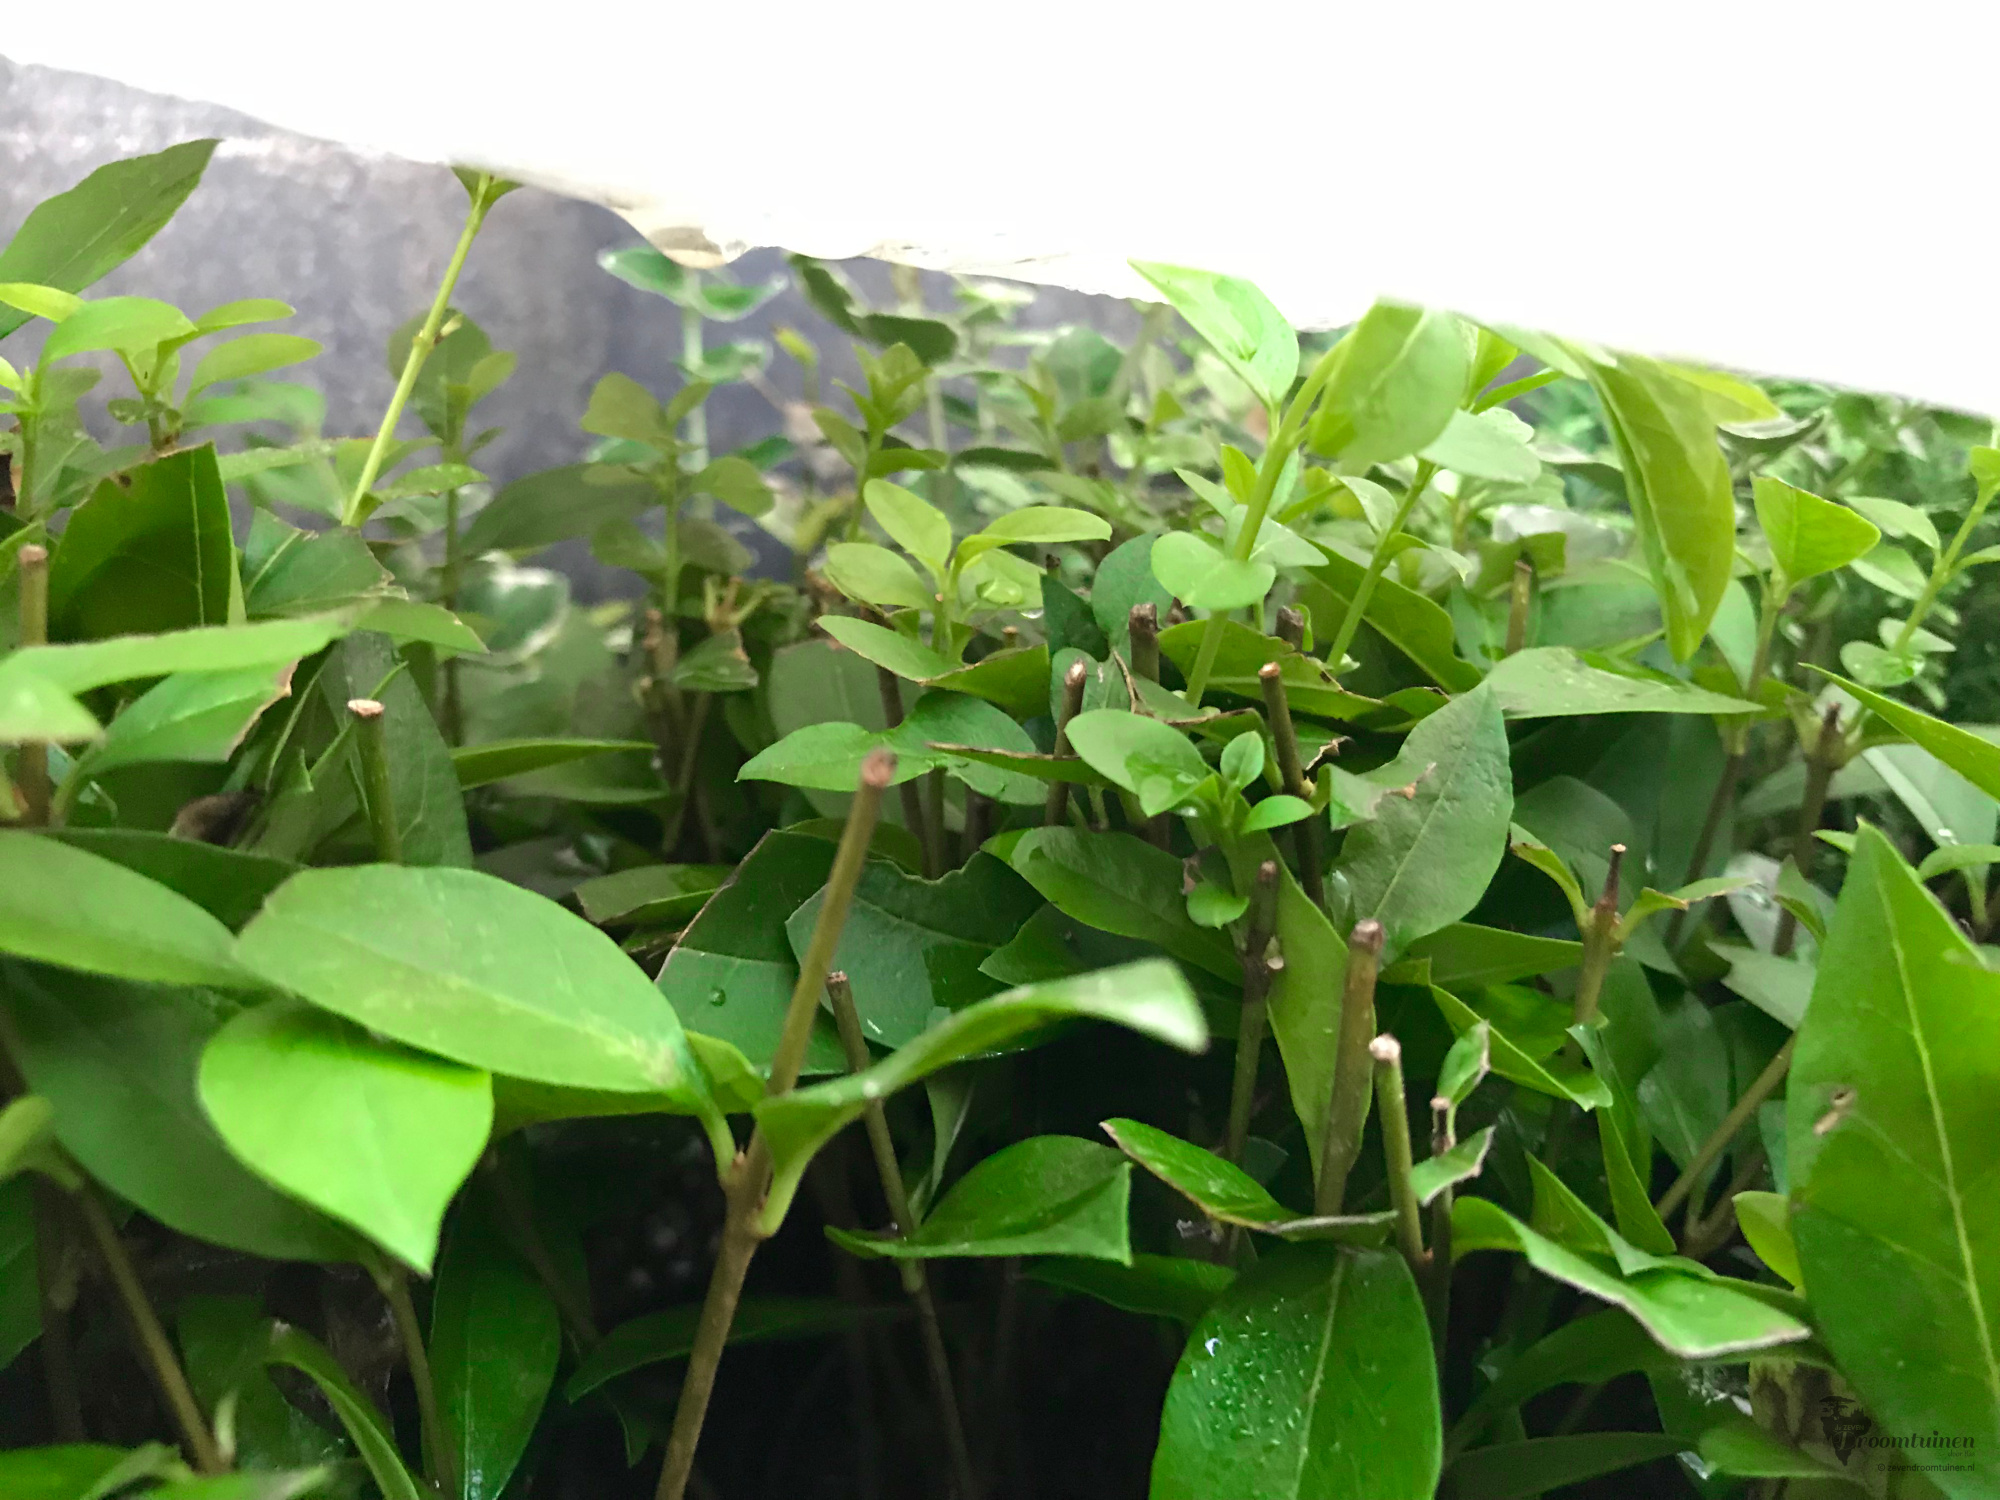 Tientallen Liguster (Ligustrum vulgare) stekjes hartje zomer in de schaduw onder plastic. Liguster is overigens een heel eenvoudig te stekken plant.